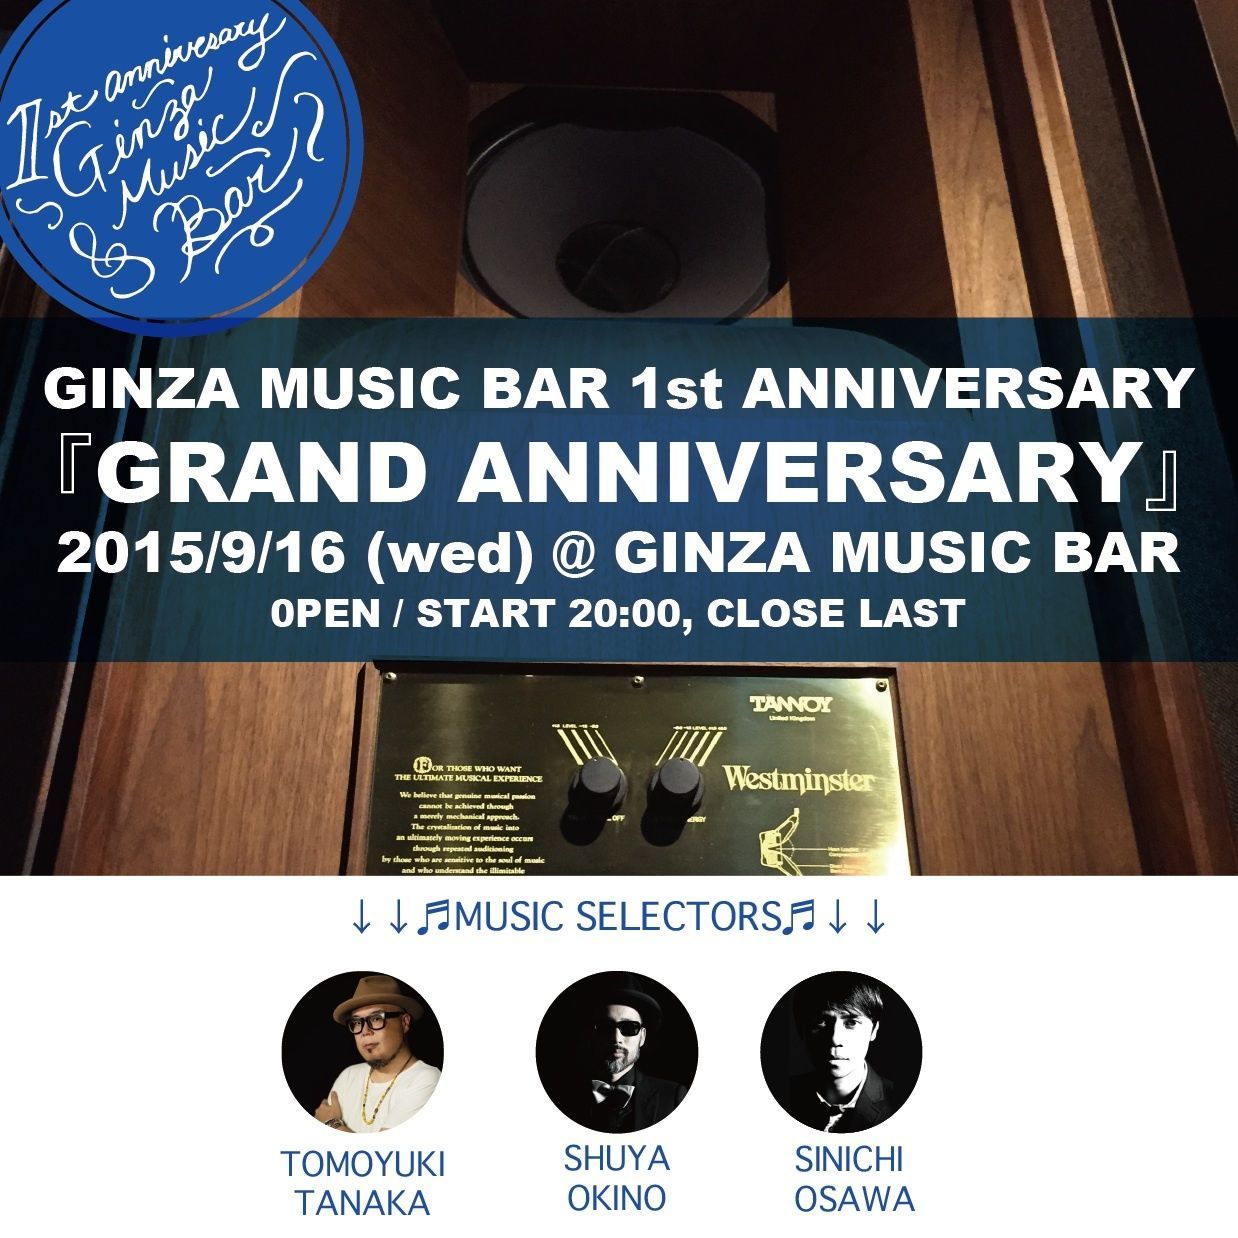 GINZA MUSIC BAR 1ST GRAND ANNIVERSARY